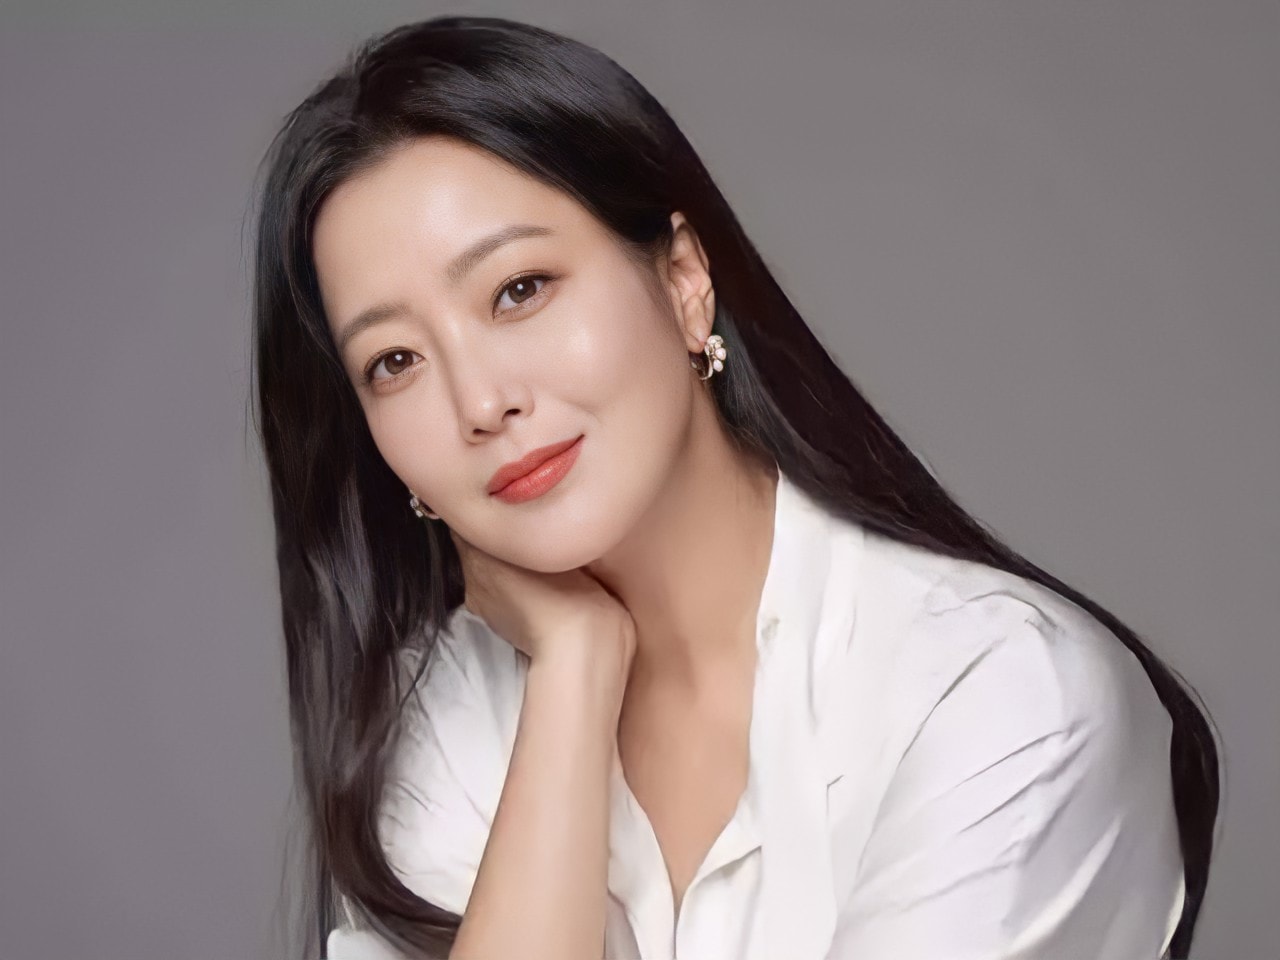 Top 5 mỹ nữ của giới giải trí Hàn do netizen Trung bầu chọn: Kim Tae Hee, Song Hye Kyo ngoài 40 vẫn được gọi tên - Ảnh 5.